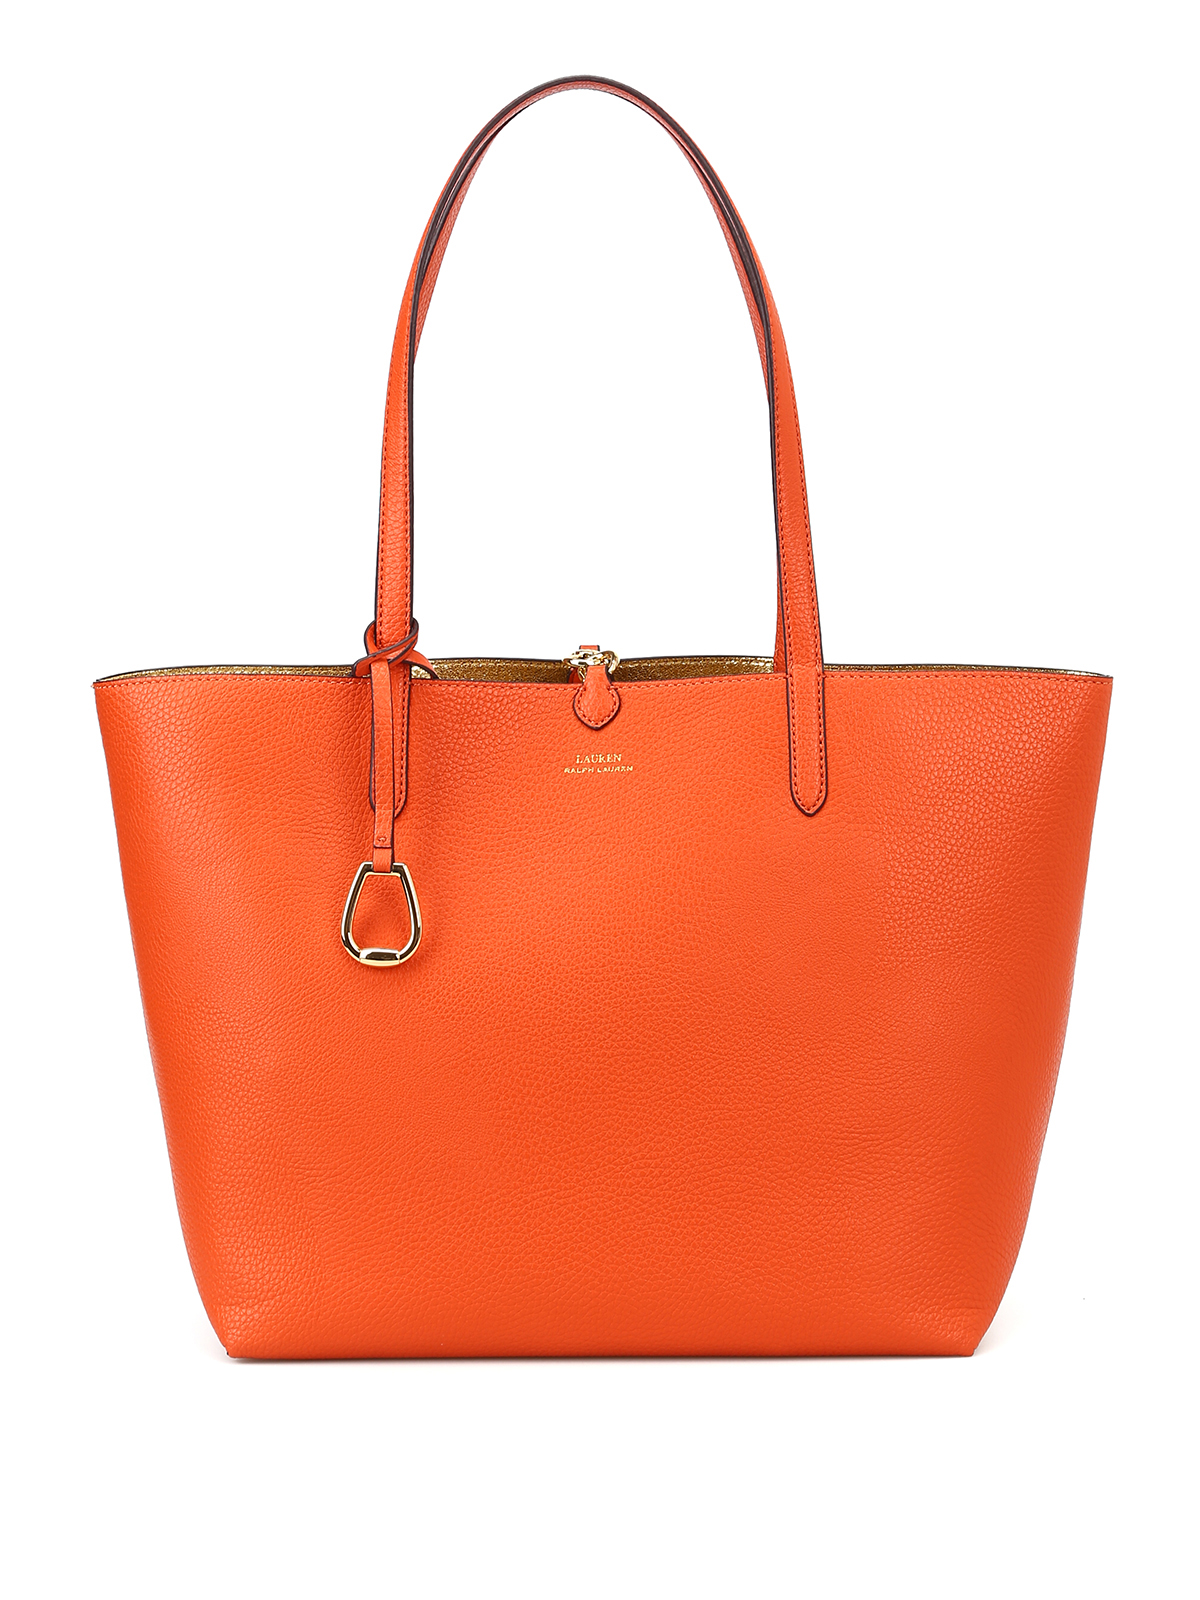 Totes bags Ralph Lauren - Merrimack orange and gold reversible tote ...